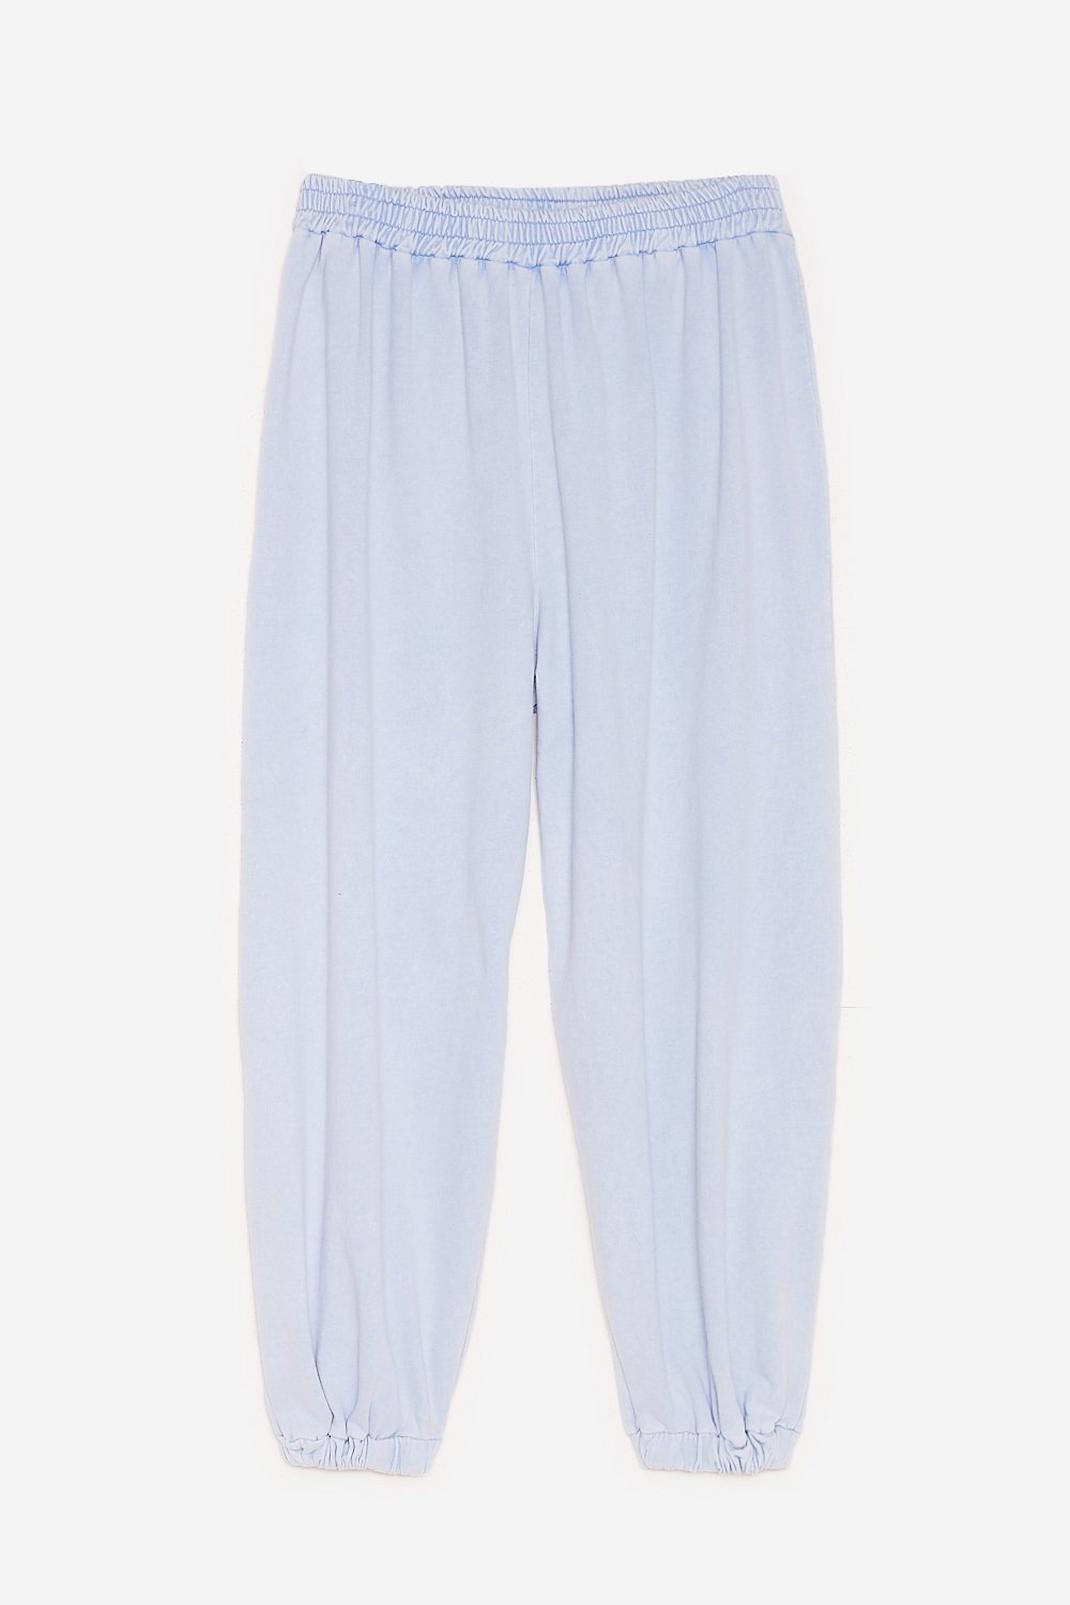 Grande Taille - Pantalon de joging ample délavé à l'acide Pas de place acide, Washed blue image number 1